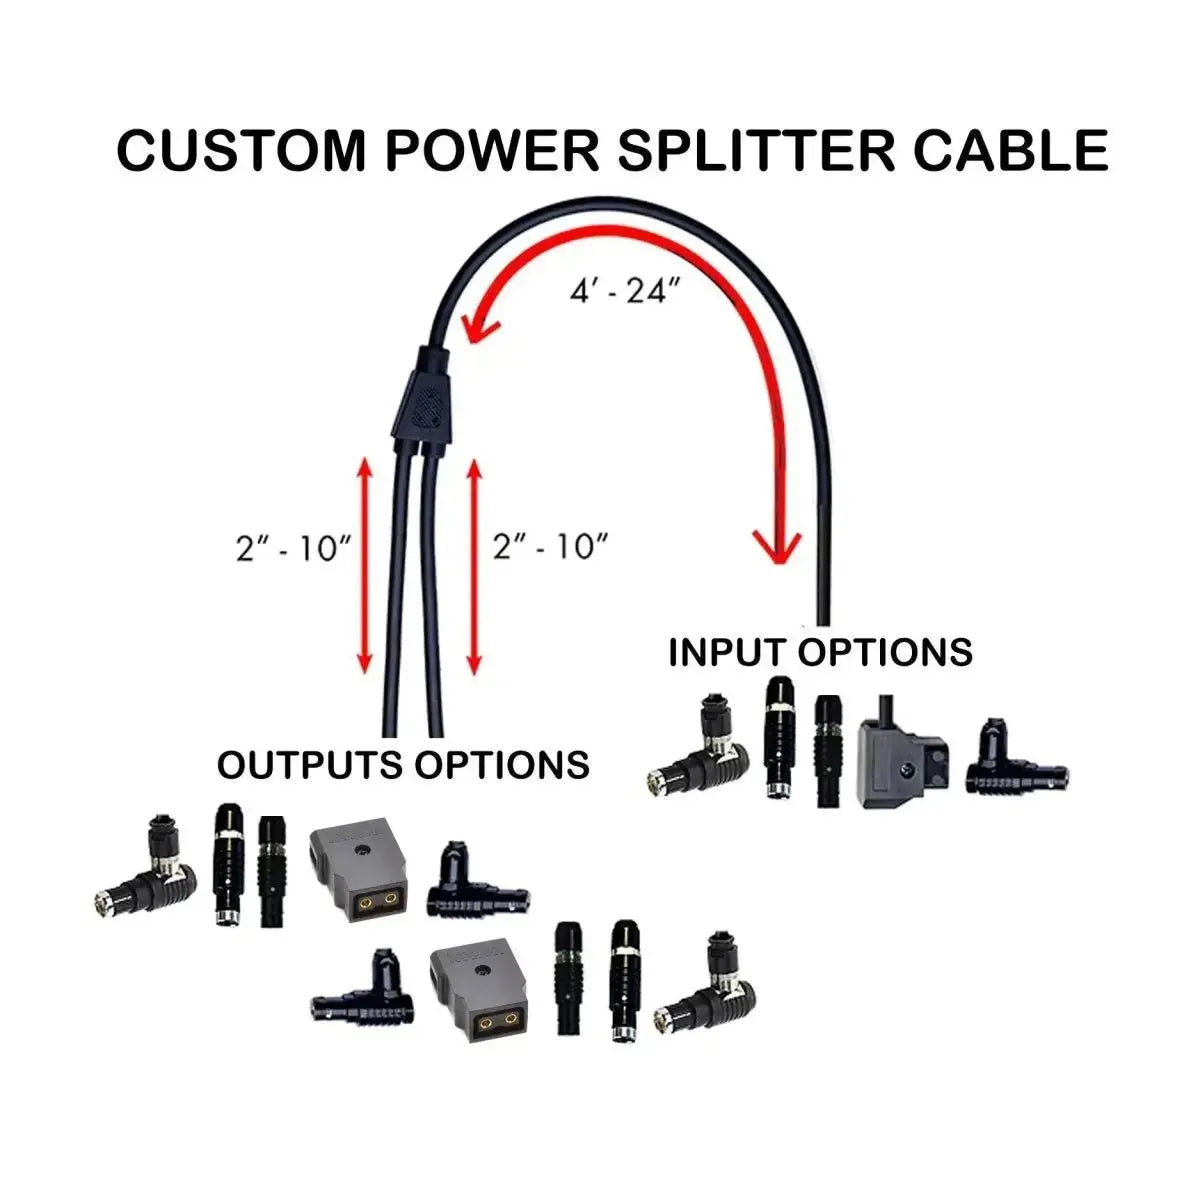 Custom Power Splitter Cable